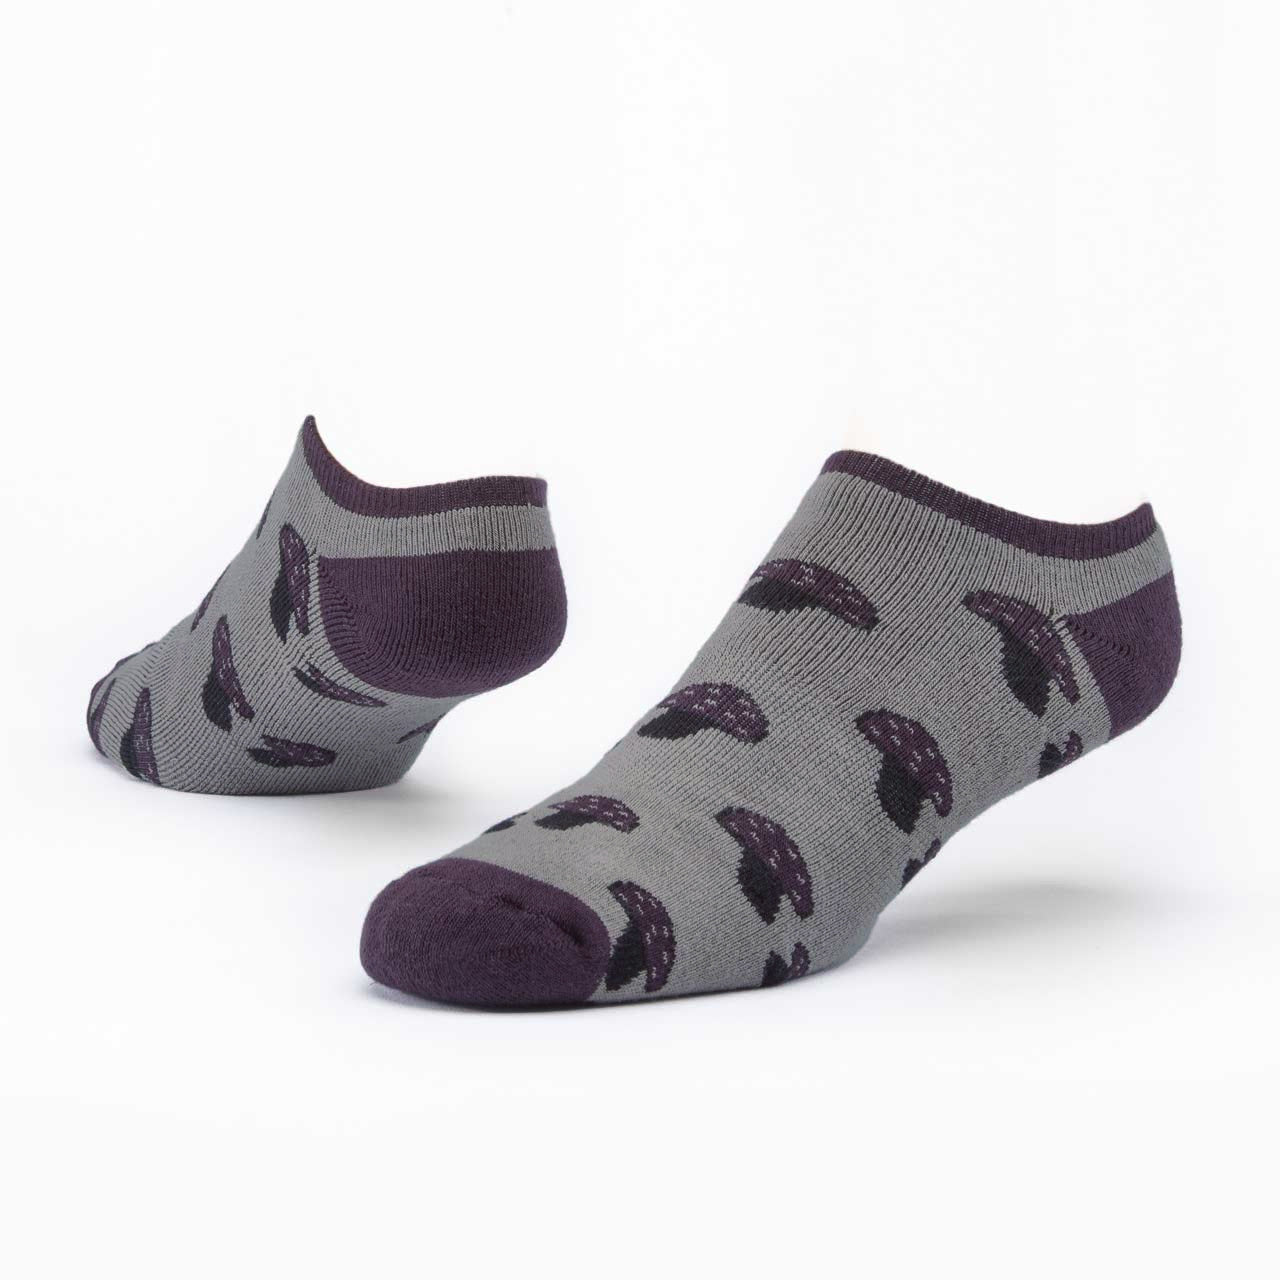 Mushroom Footie Socks - Taupe